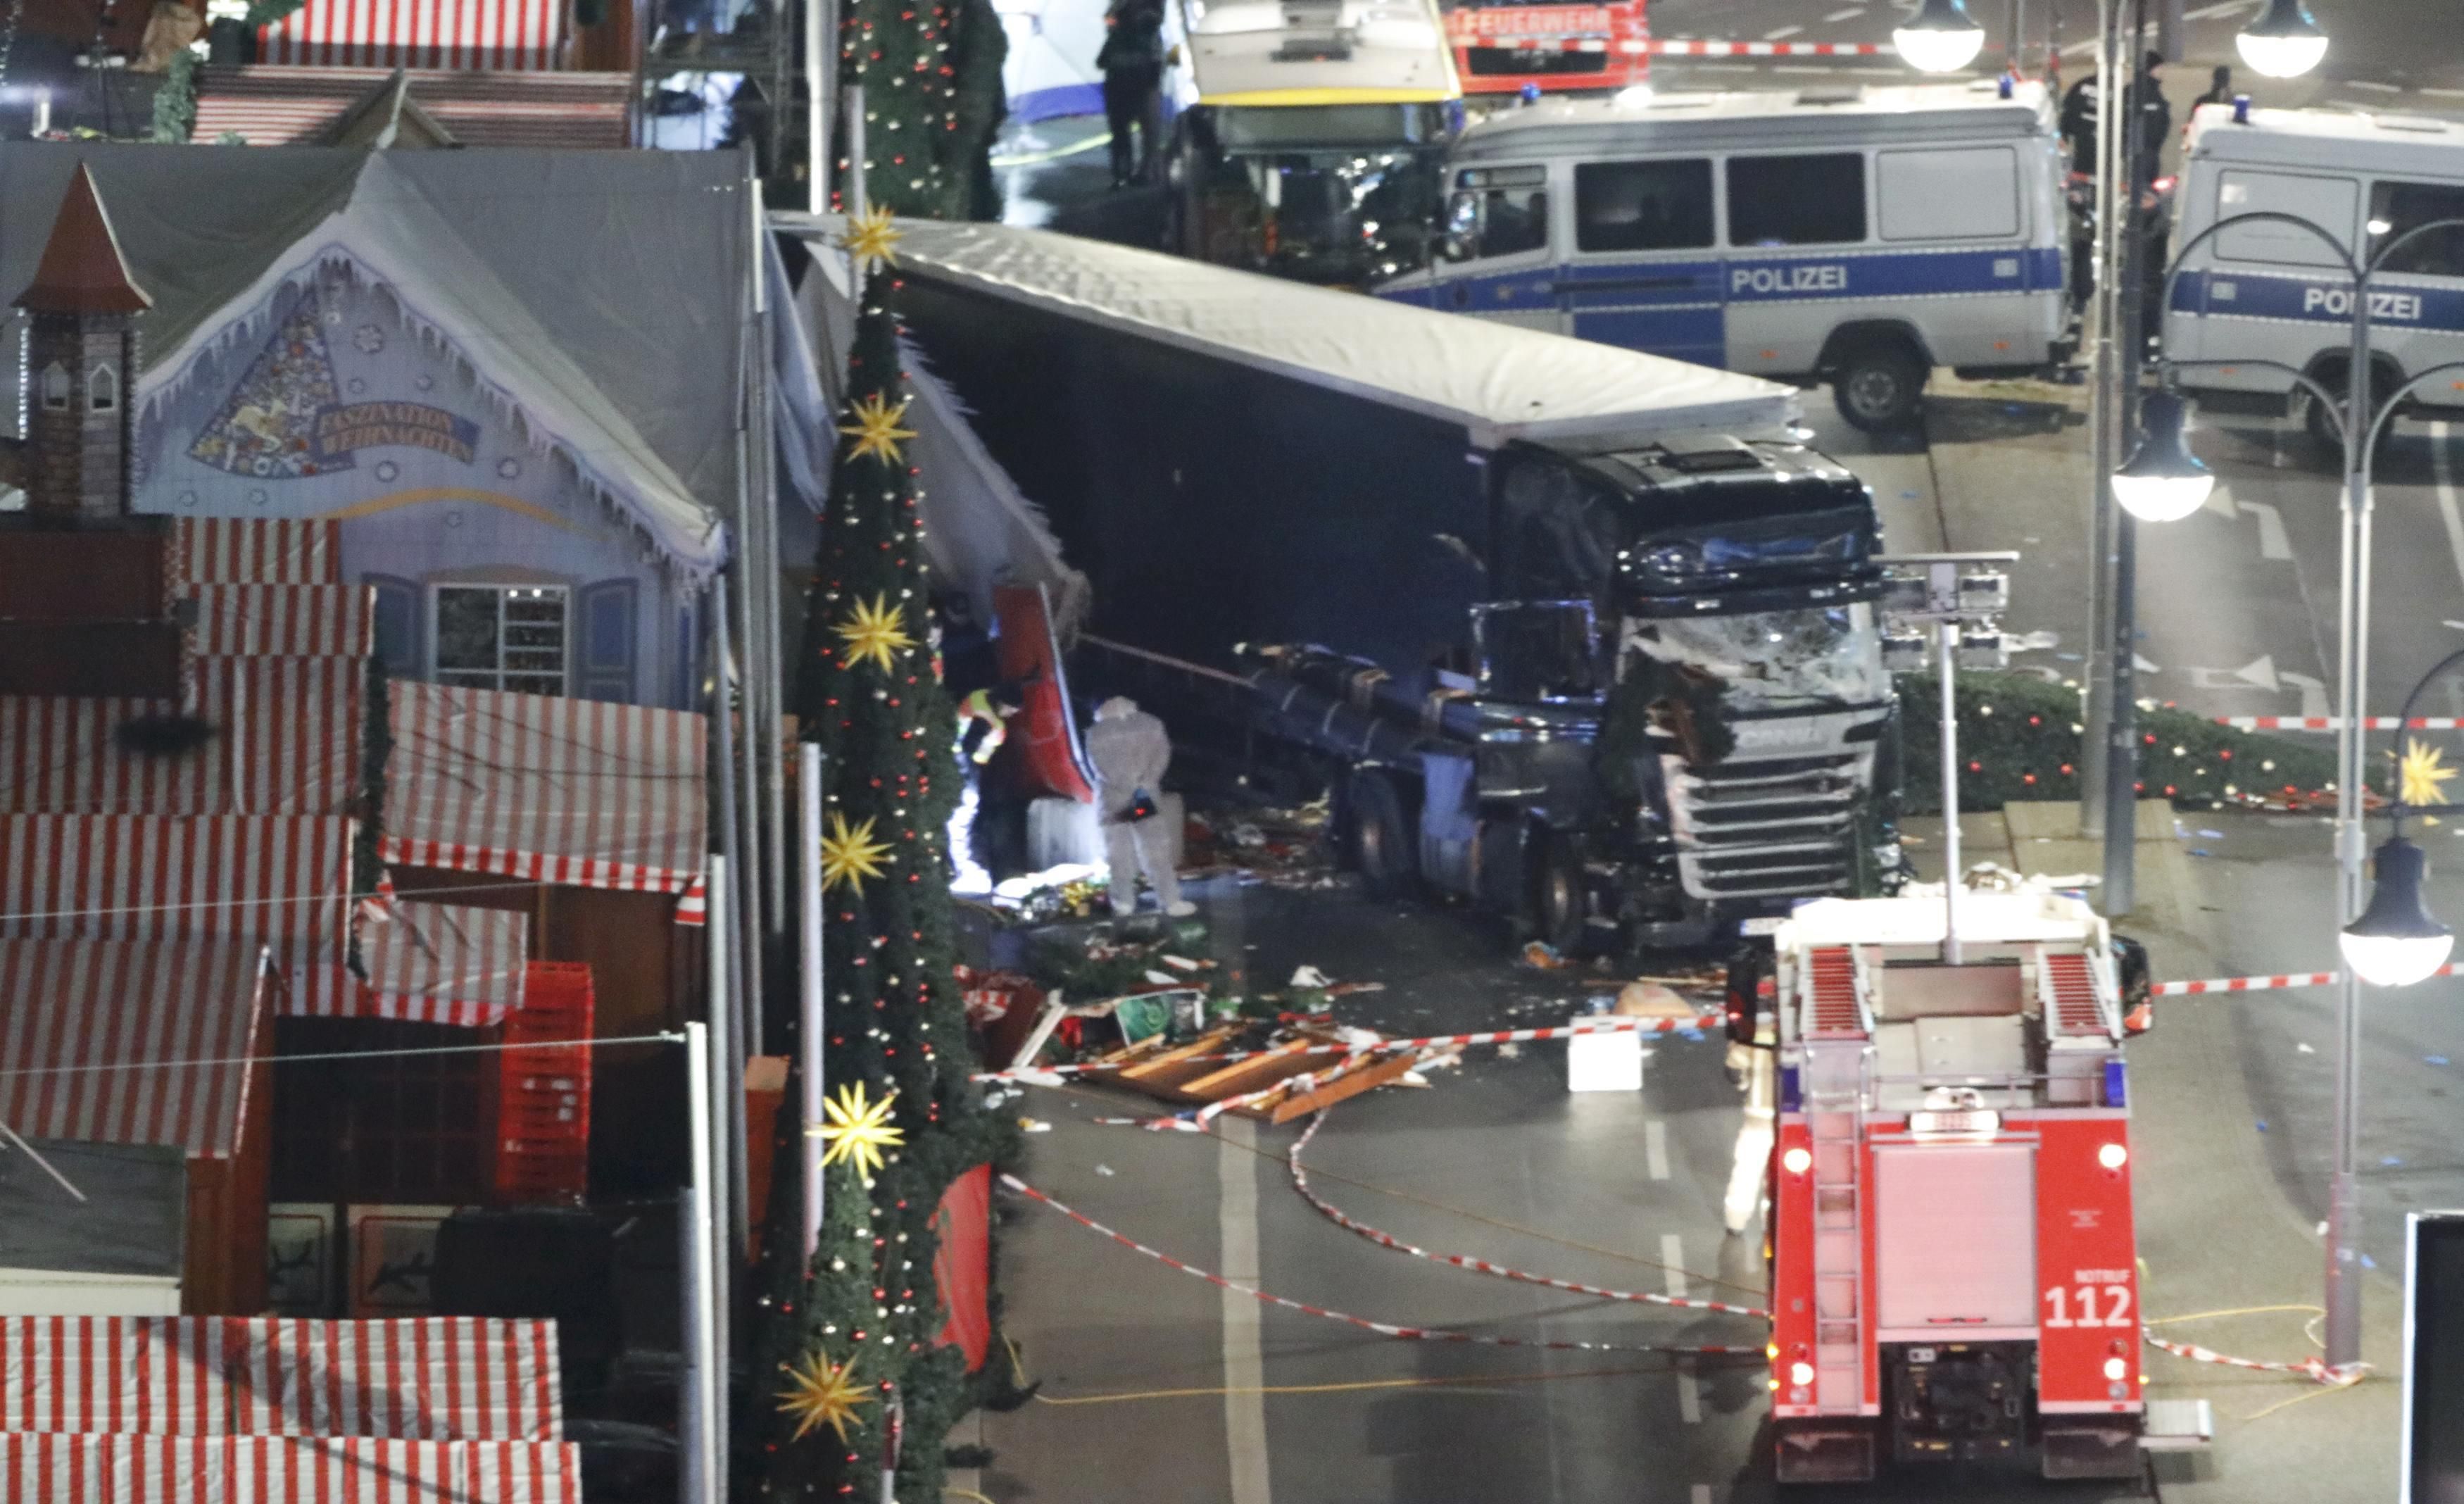 "Террористы добились успеха" и "не бойтесь", – реакция немецких СМИ на теракт в Берлине